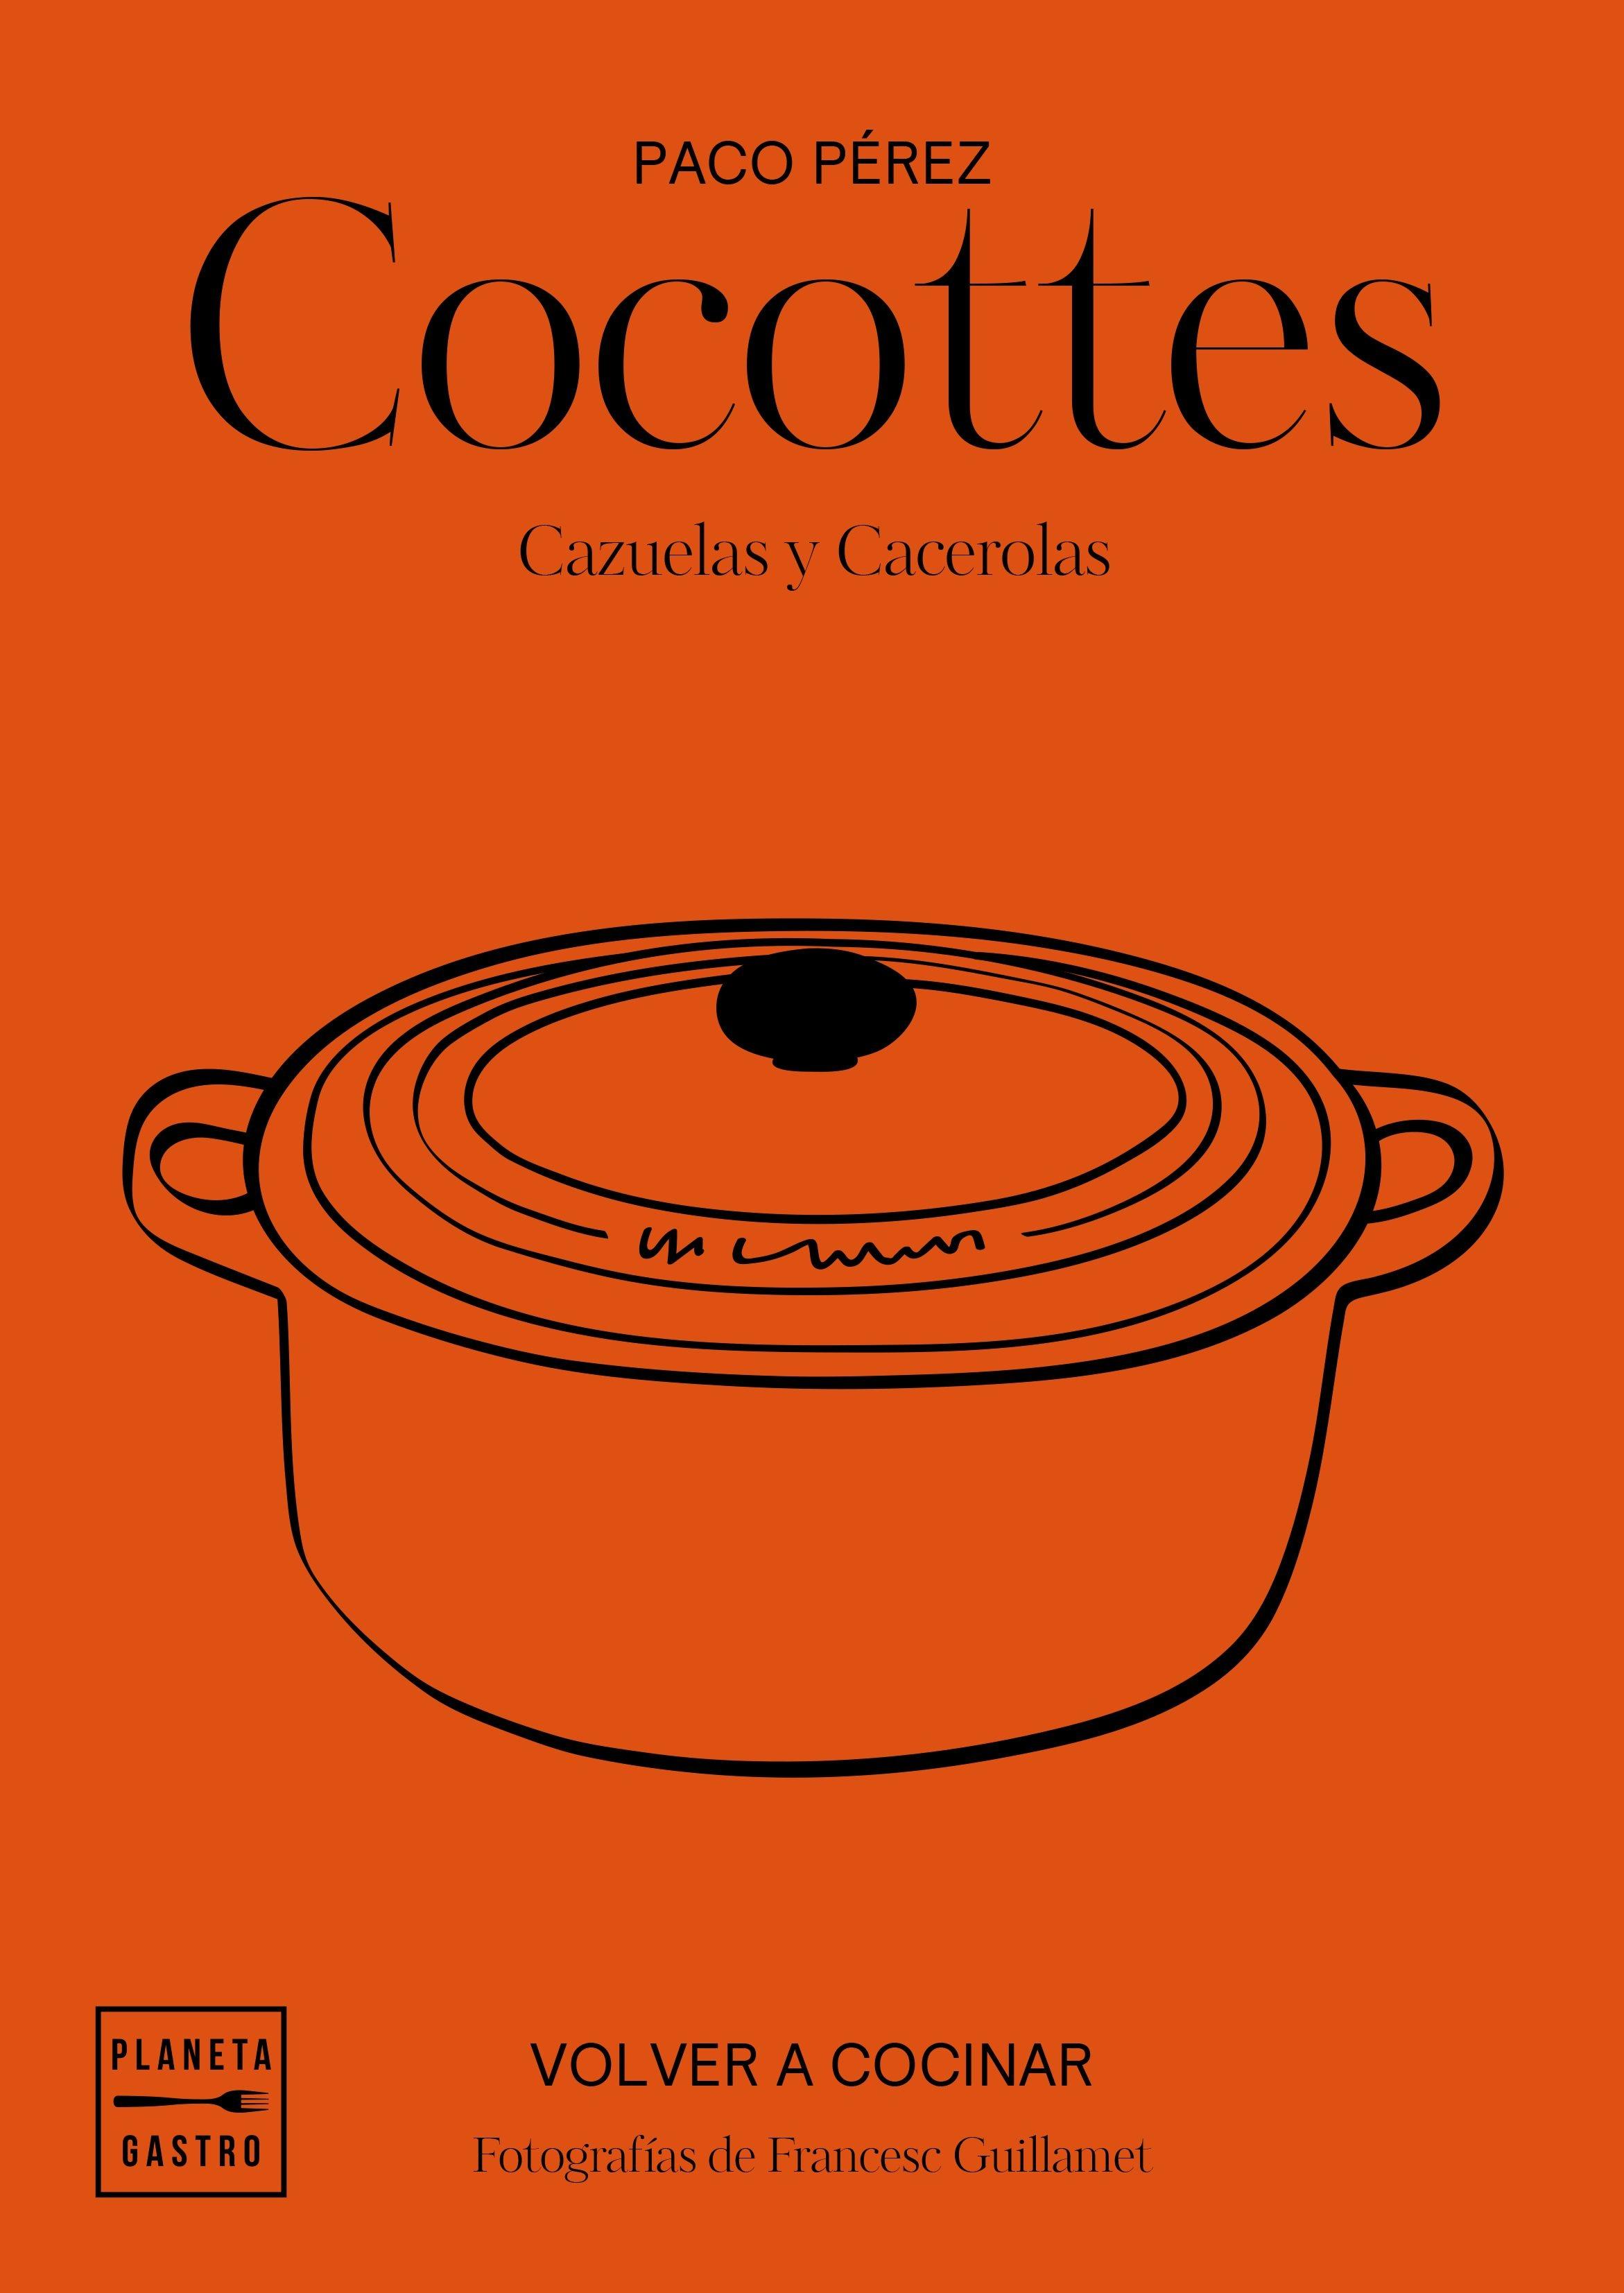 Cocottes "Cazuelas y cacerolas"